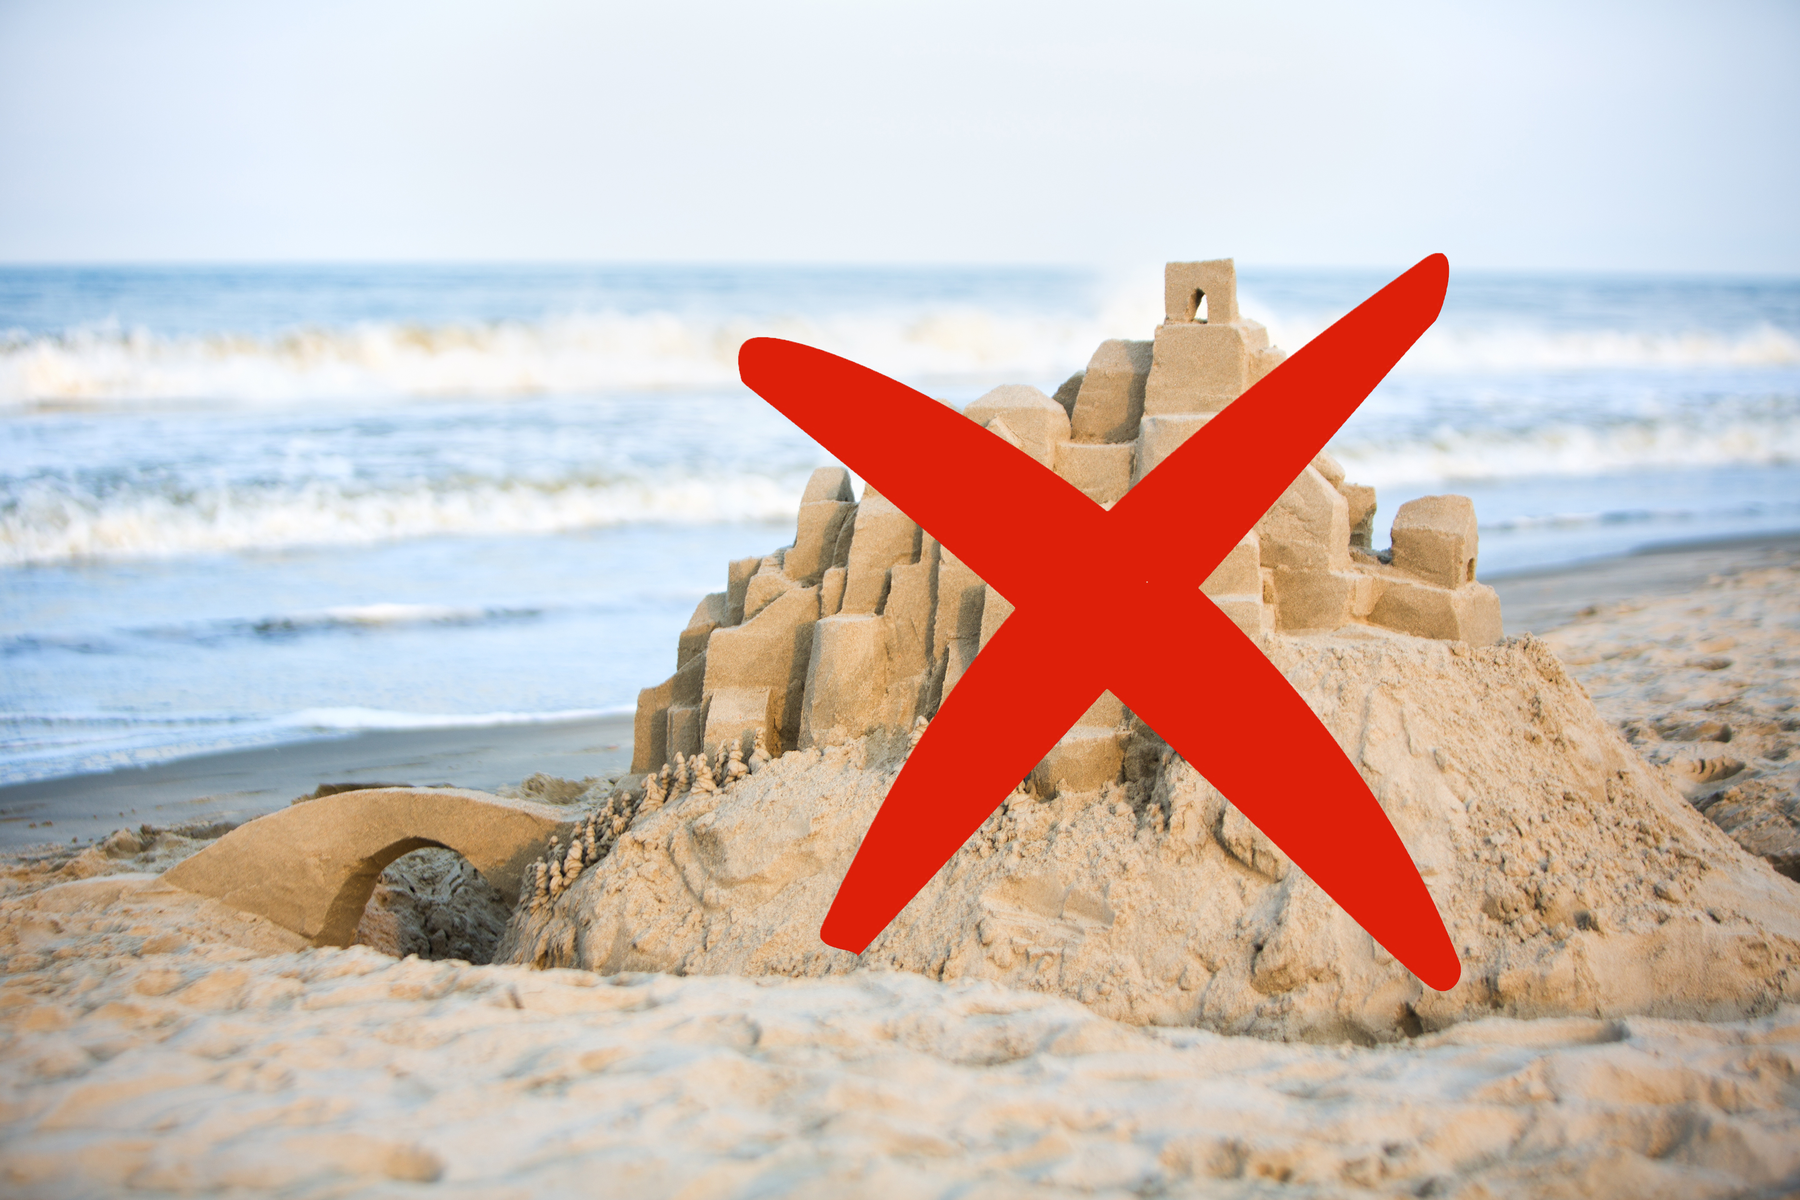 Urlaubszeit: Von Kuss- und Sandburg-Verboten: Die skurrilsten „Verbrechen“ in Urlaubsorten